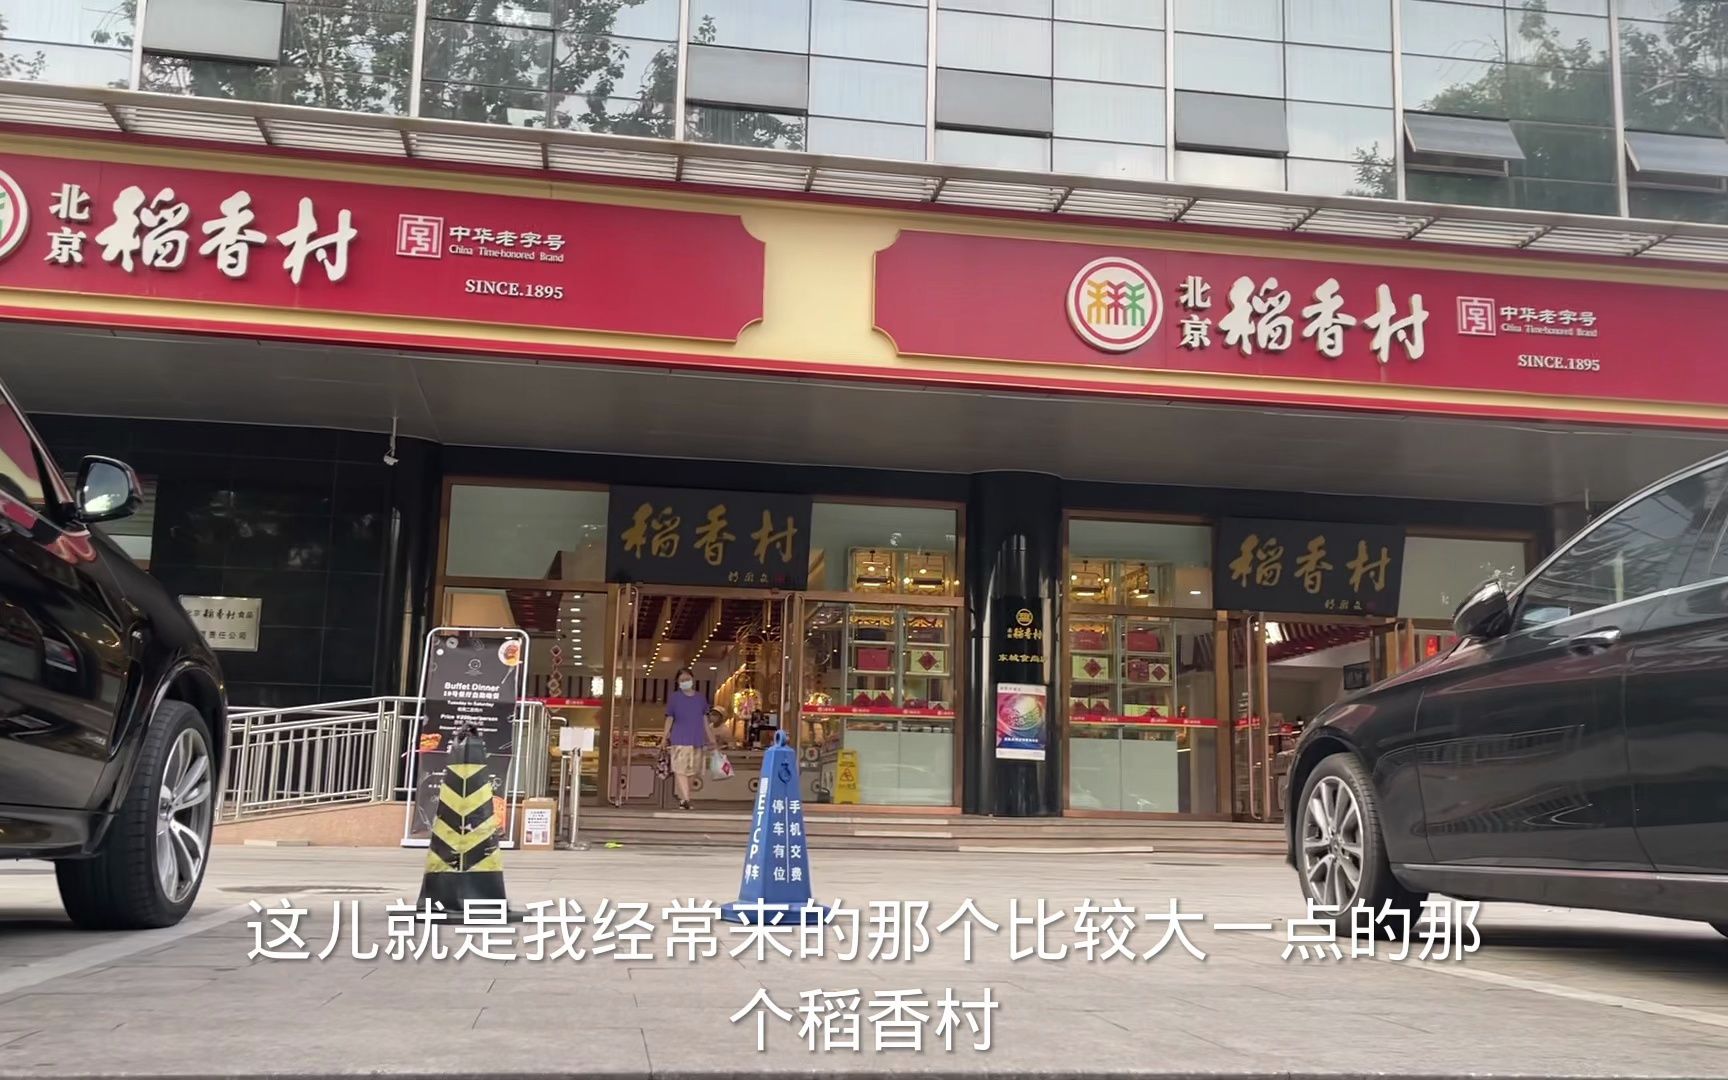 北京三禾稻香村直营店和加盟店差别还是挺大的，看清楚门口招牌